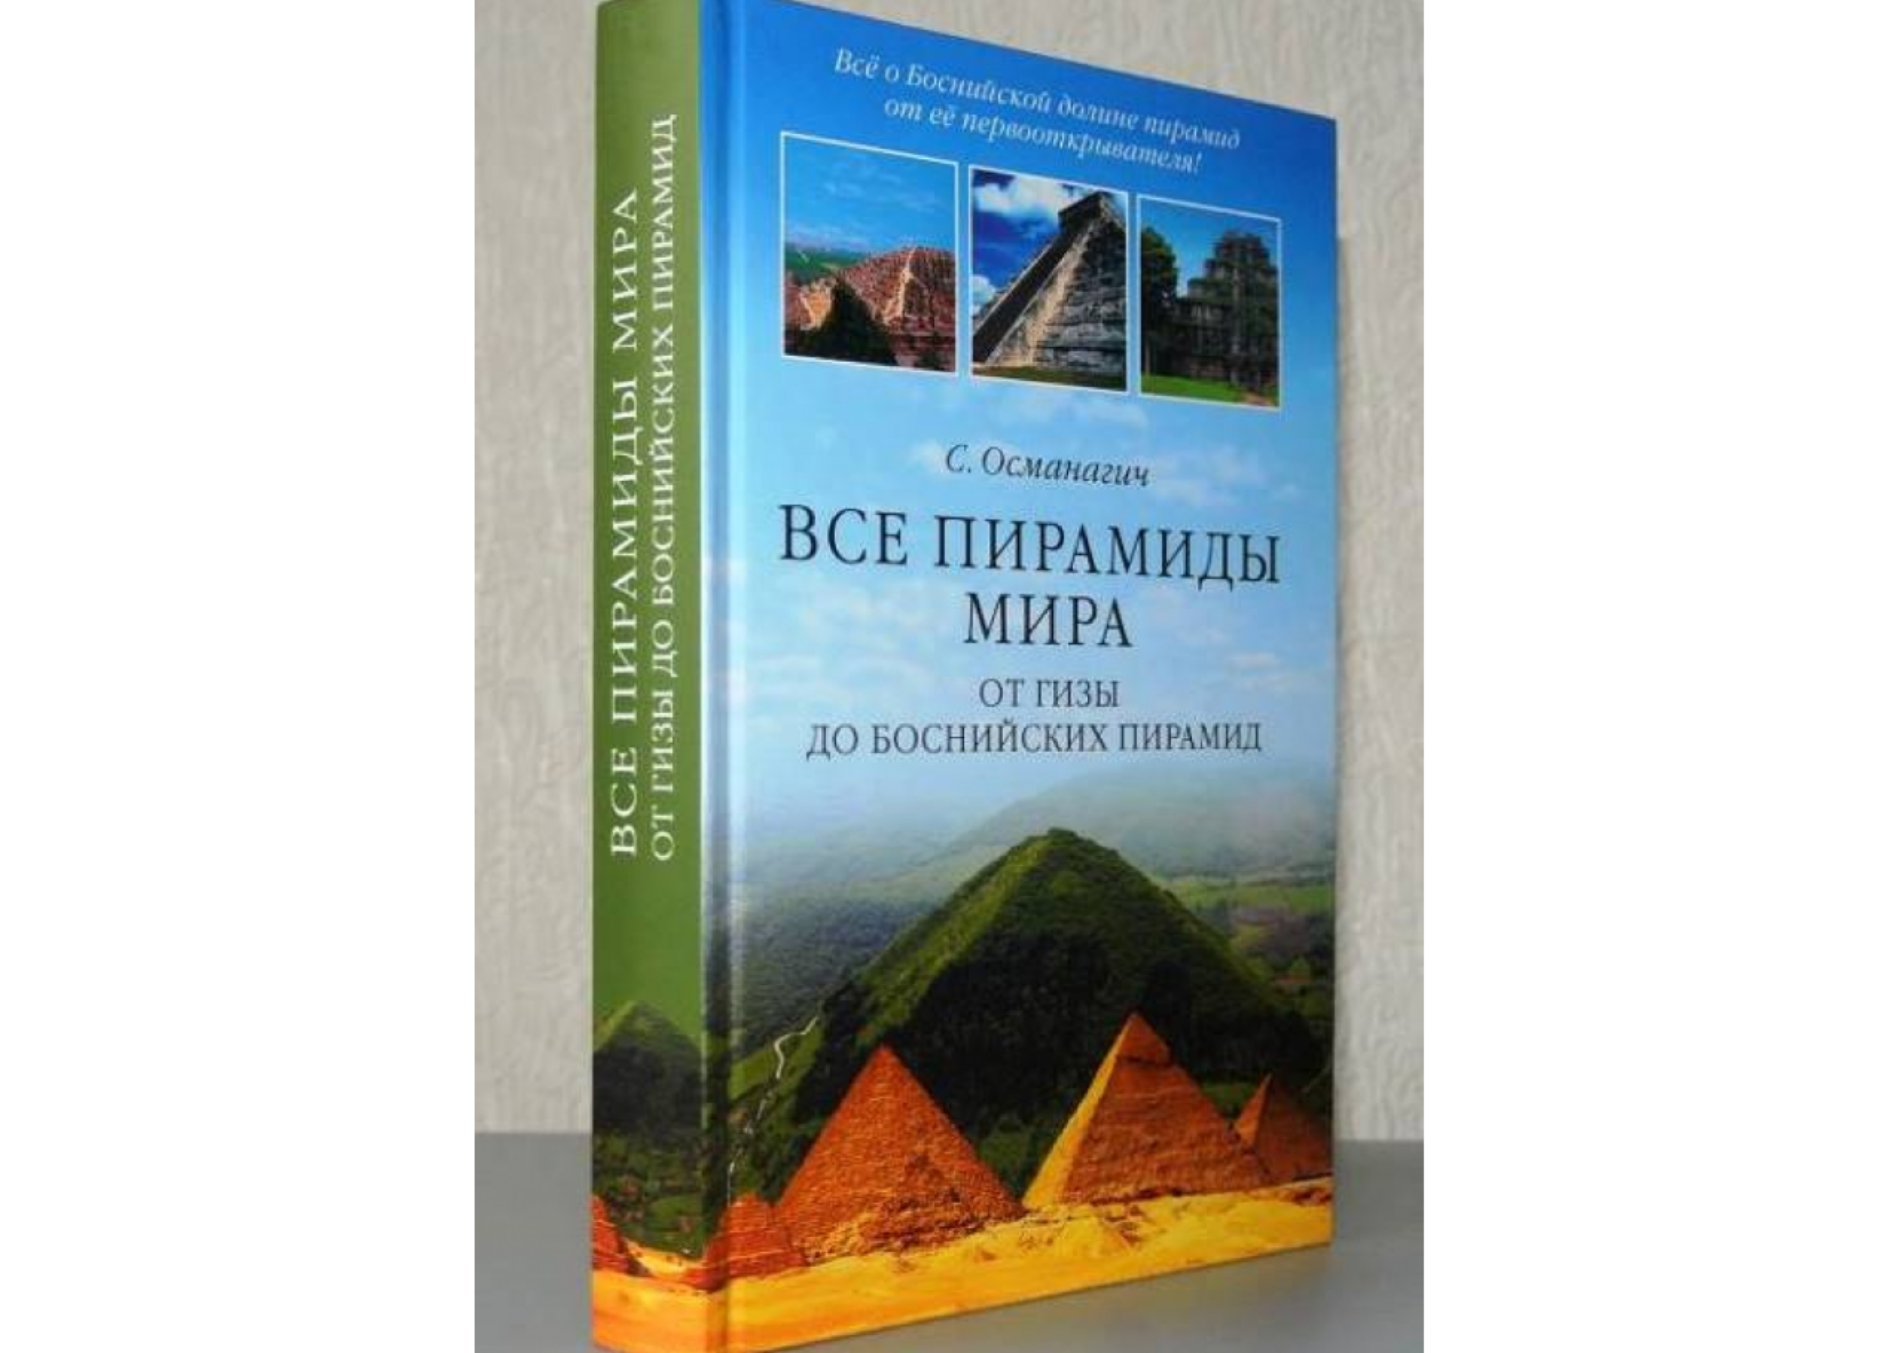 Popularnost bosanskih piramida u Rusiji